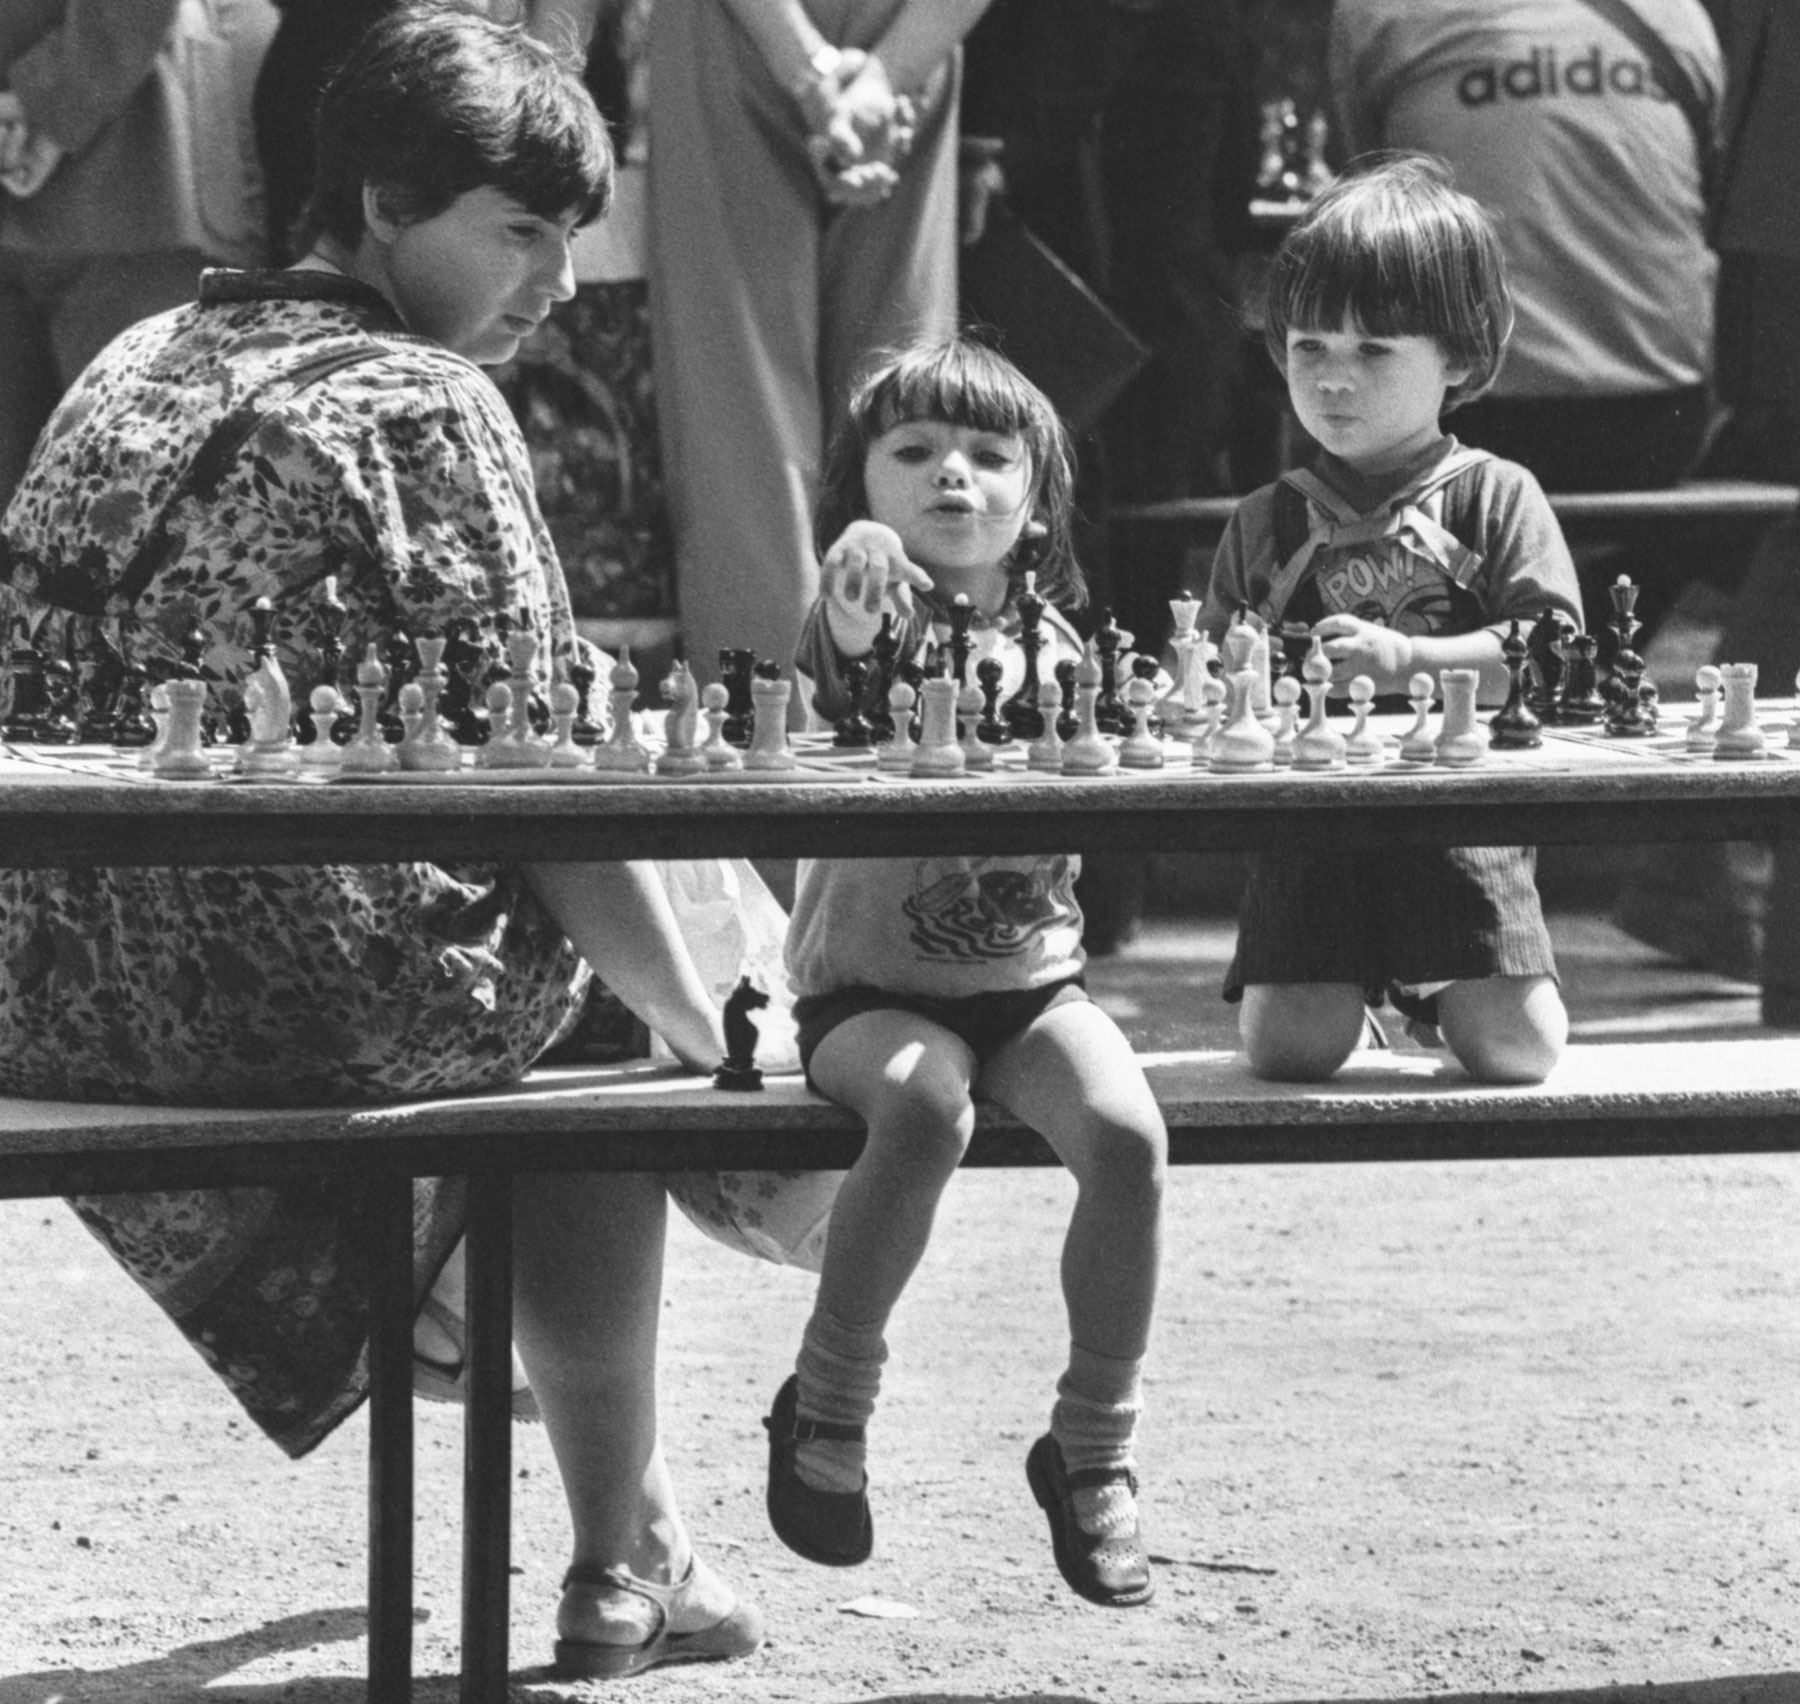 1988. Ragazzini in un torneo di scacchi a Mosca